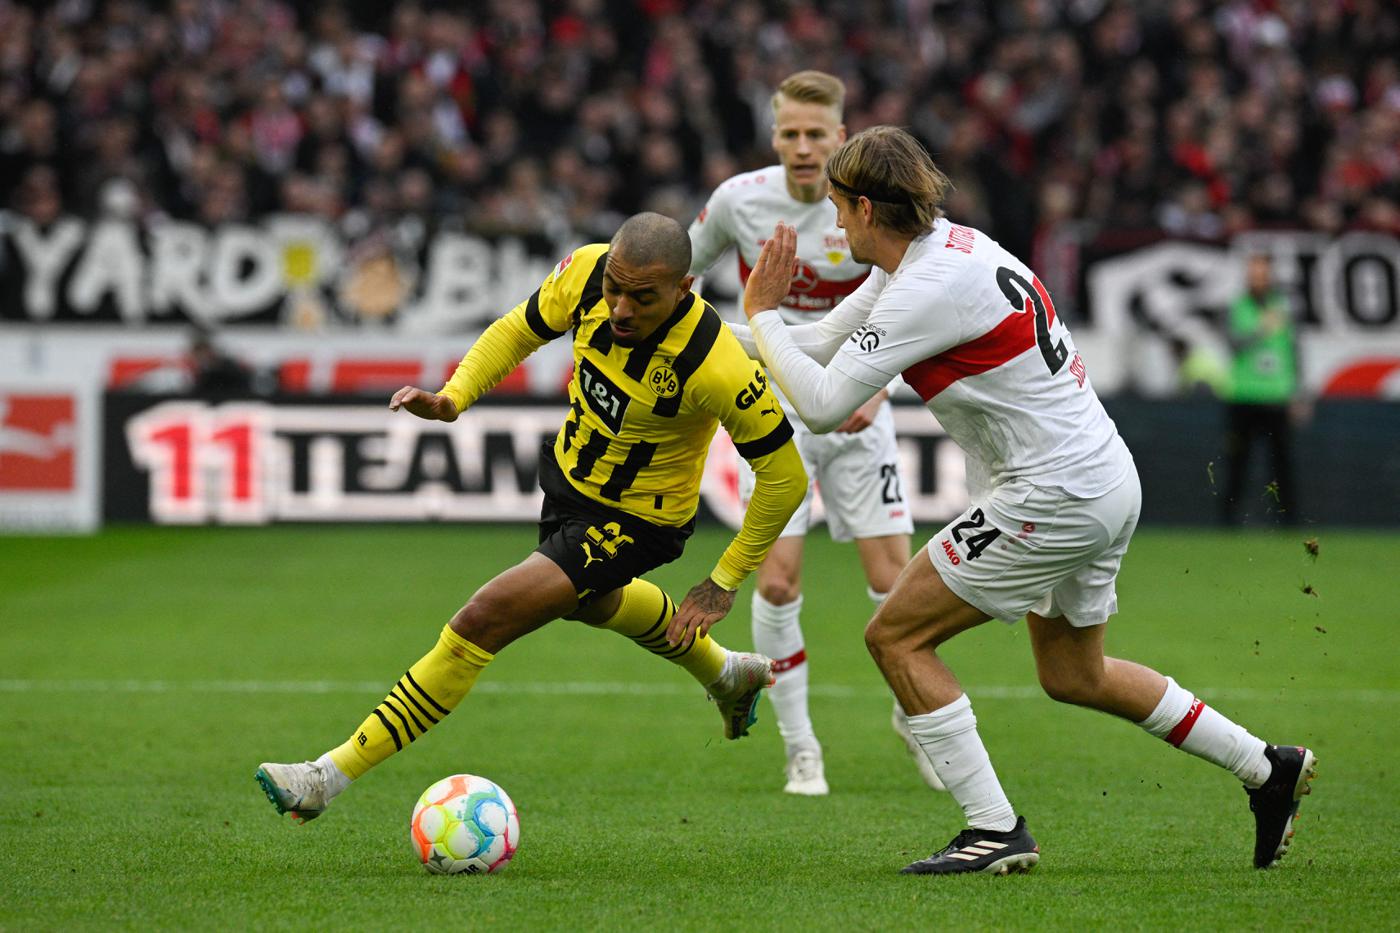 Stuttgart - Borussia D - 3:3. Mistrzostwa Niemiec, 28. runda. Przegląd meczu, statystyki